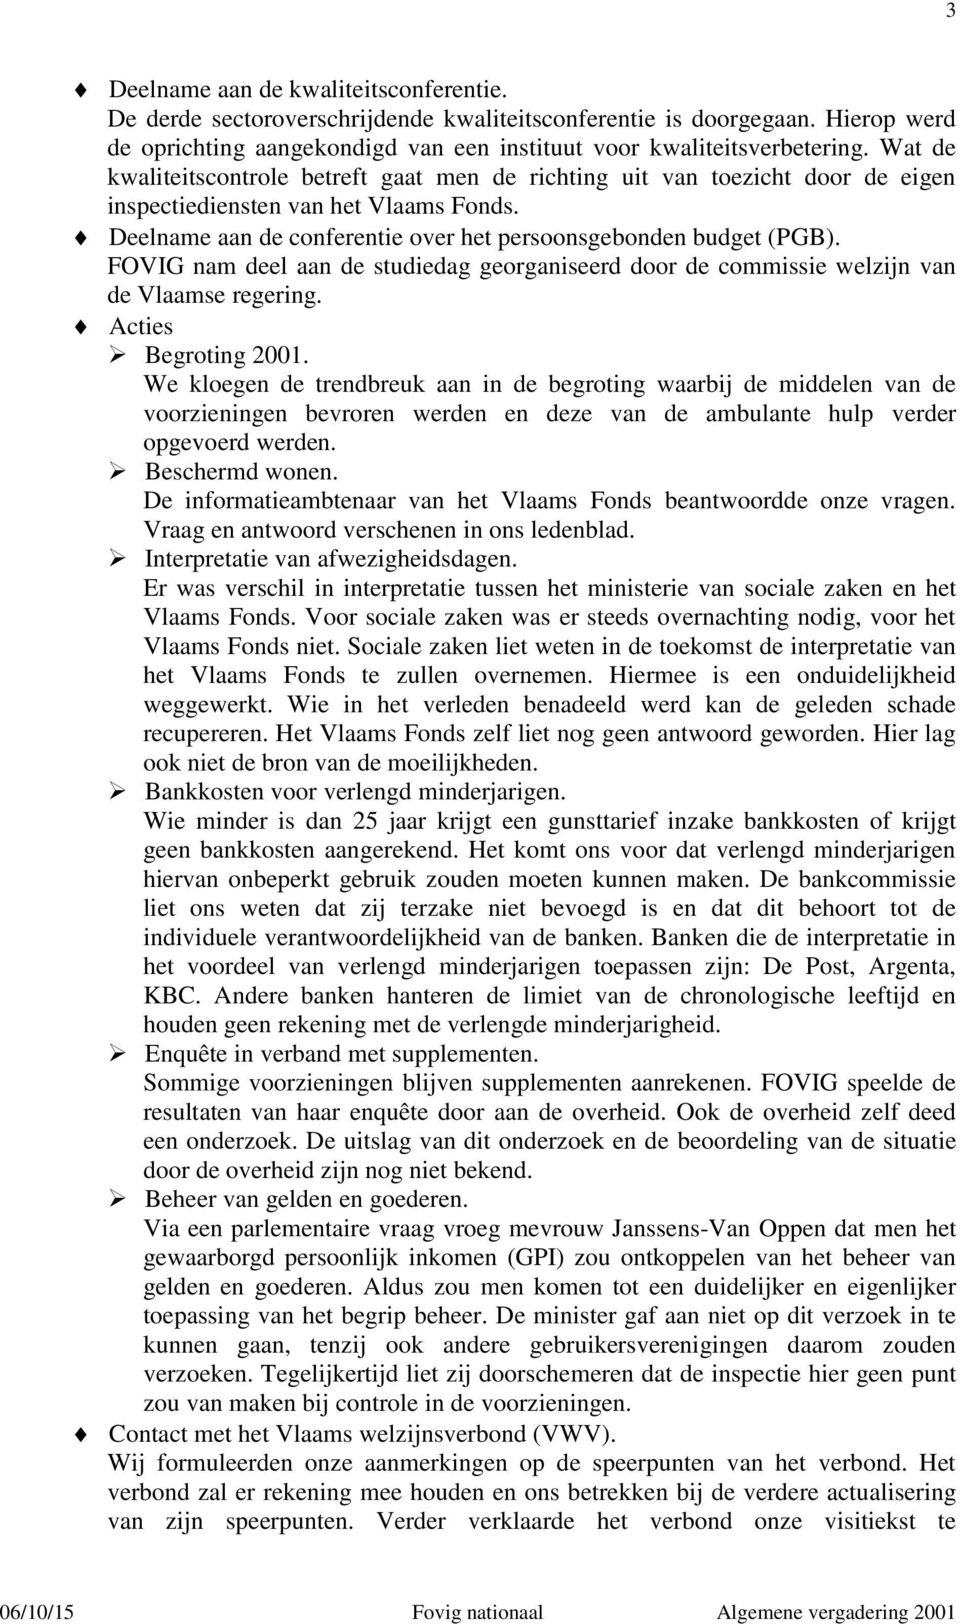 FOVIG nam deel aan de studiedag georganiseerd door de commissie welzijn van de Vlaamse regering. Acties Begroting 2001.